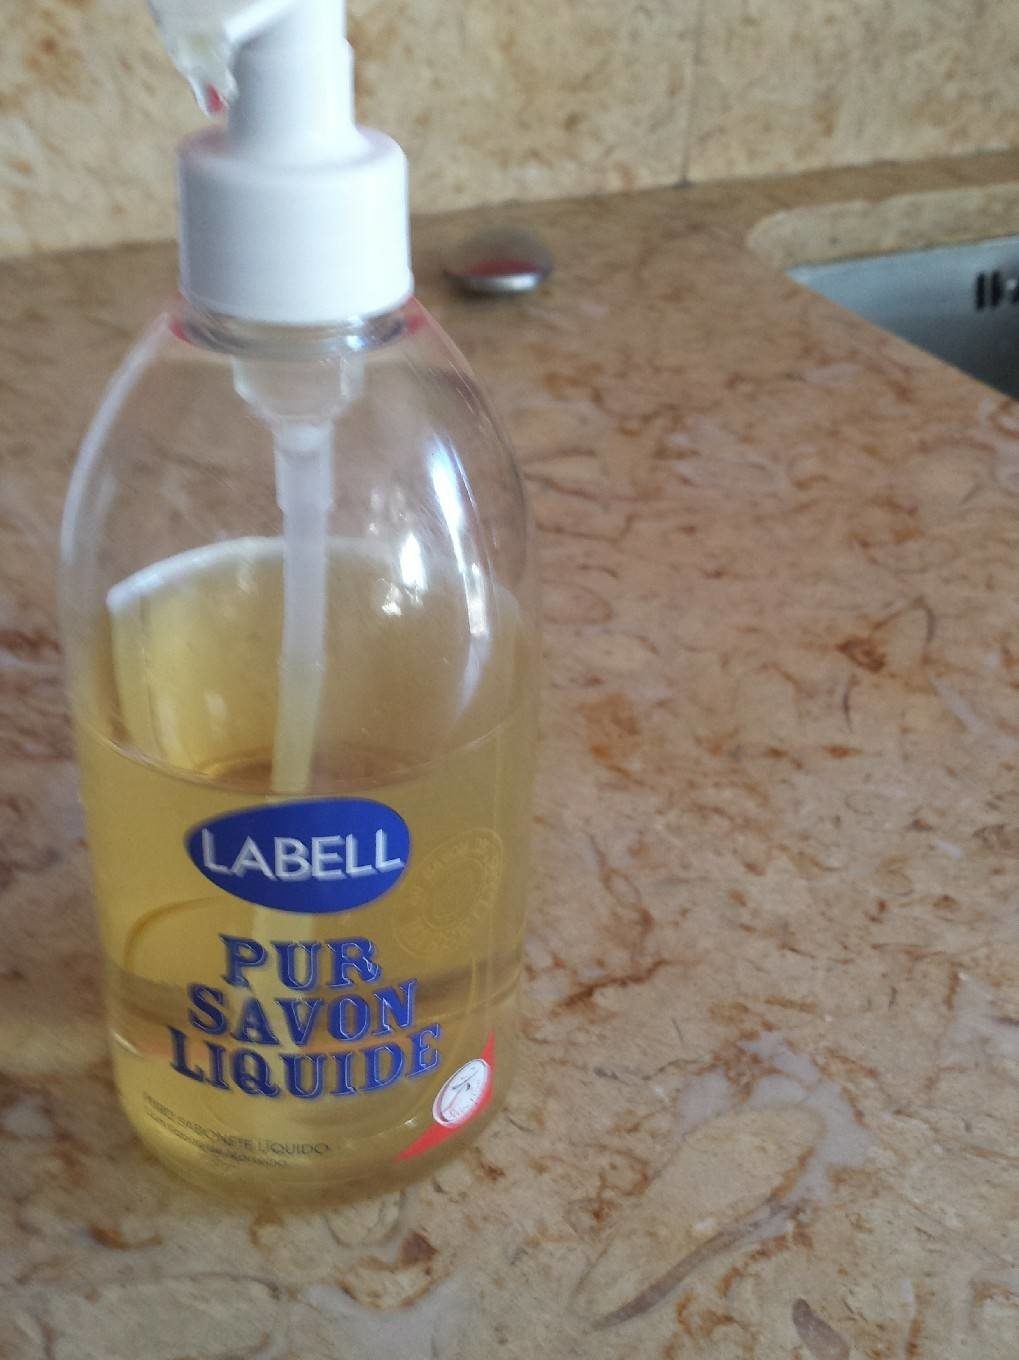 Pur savon liquide - Продукт - fr